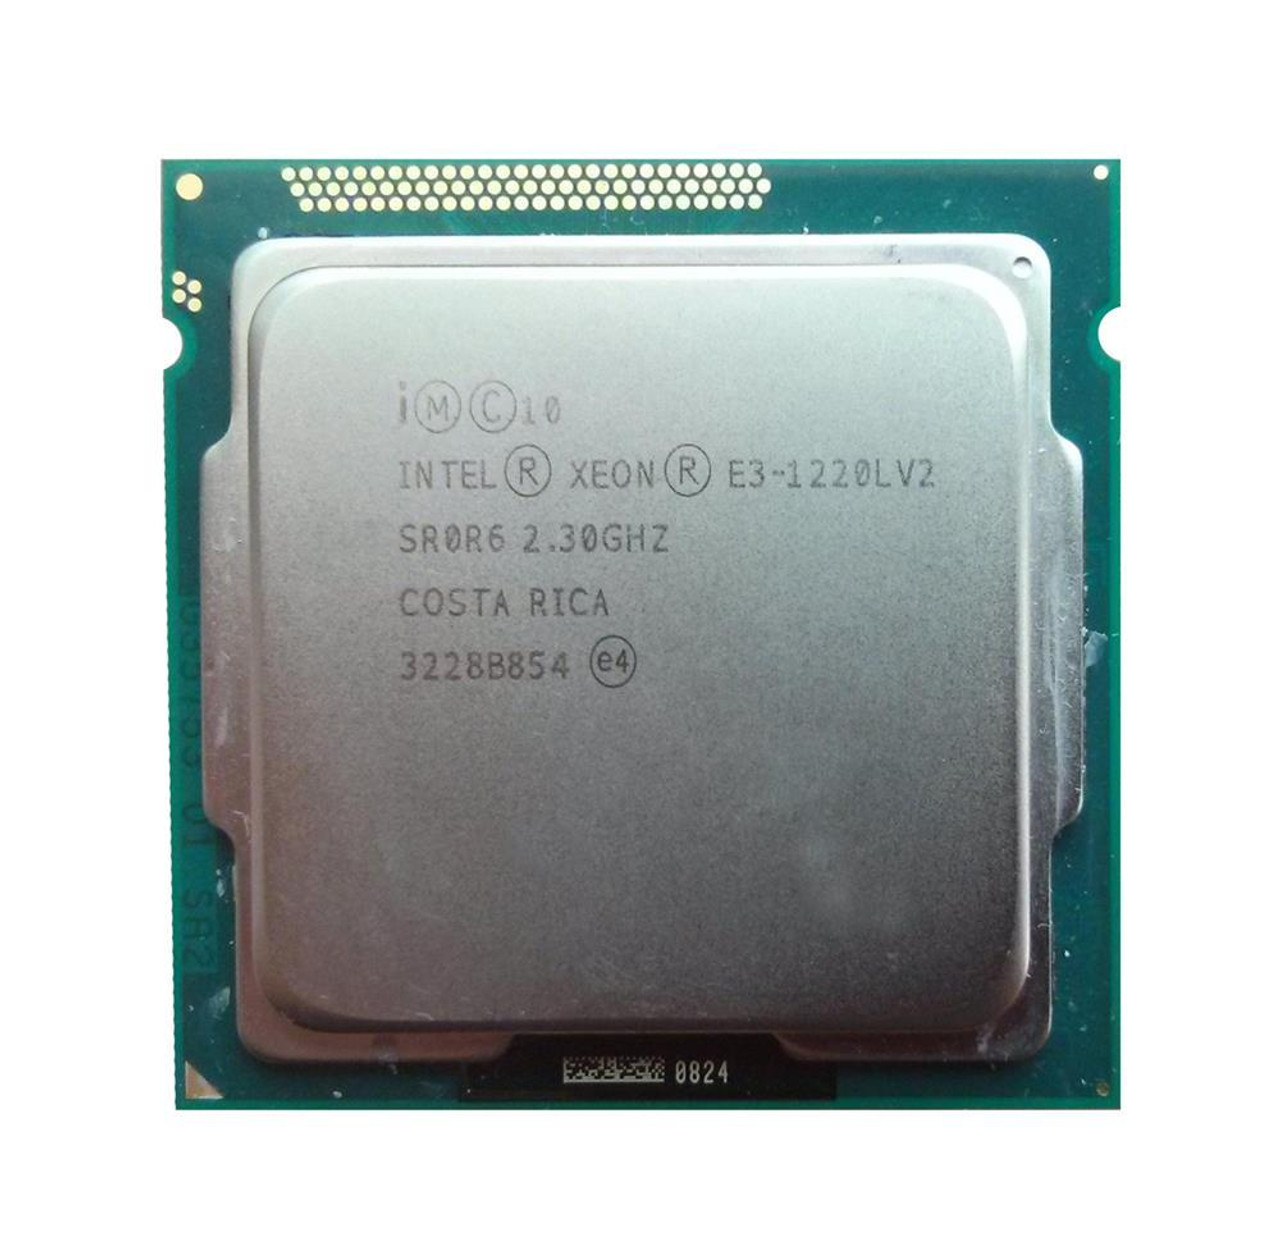 Lenovo 2.30GHz 5.00GT/s DMI 3MB L3 Cache Socket FCLGA1155 Intel Xeon E3-1220L v2 Dual Core Processor Upgrade